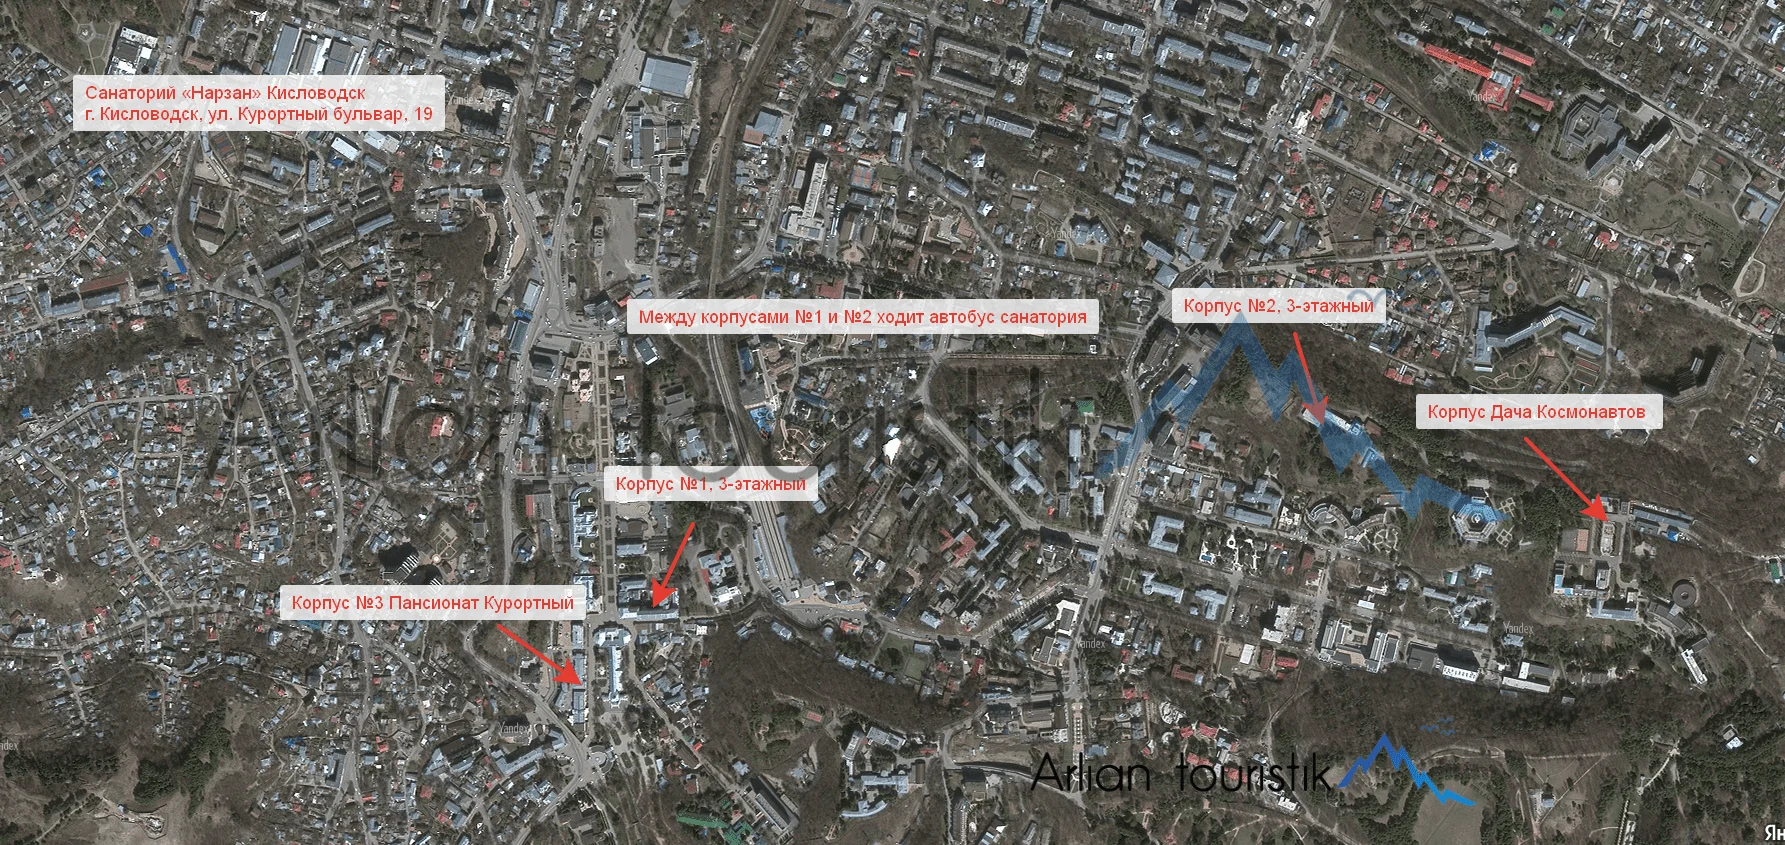 Расположение корпусов санатория «Нарзан» (Кисловодск) План-схема, инфраструктура.